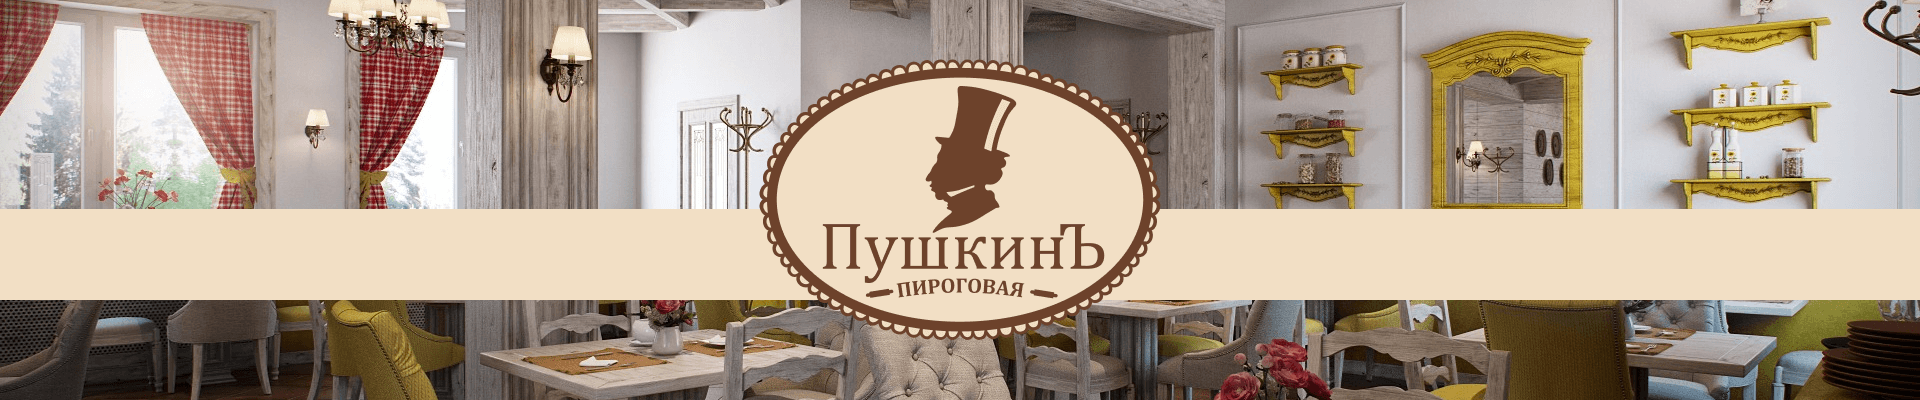 Настройка рекламы для пироговой «Пушкинъ»